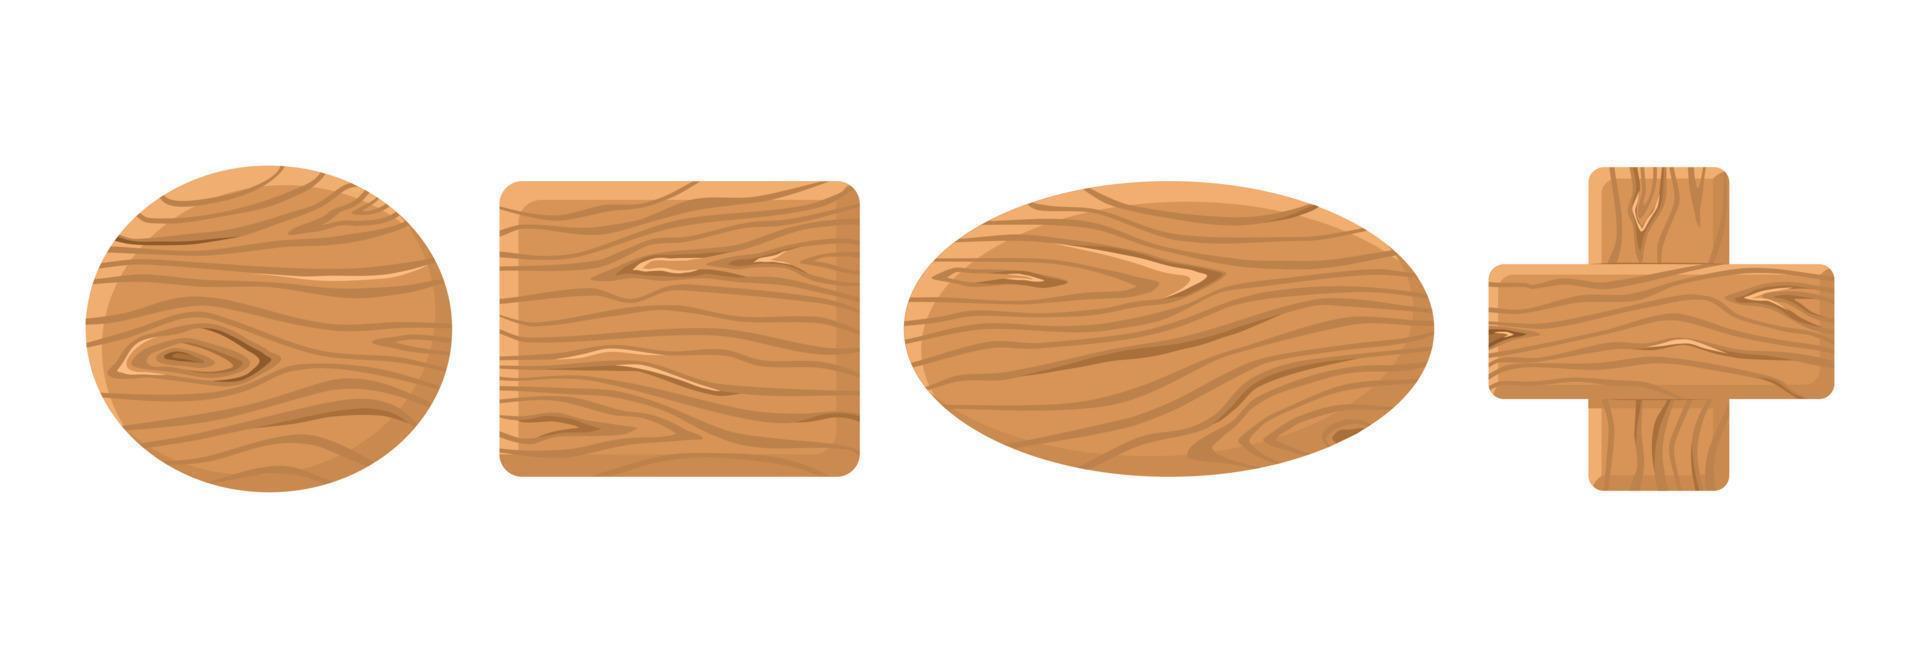 botões de madeira diferentes formas em fundo branco isolado. elementos de gui de vetor dos desenhos animados. quadro de tablet de madeira.